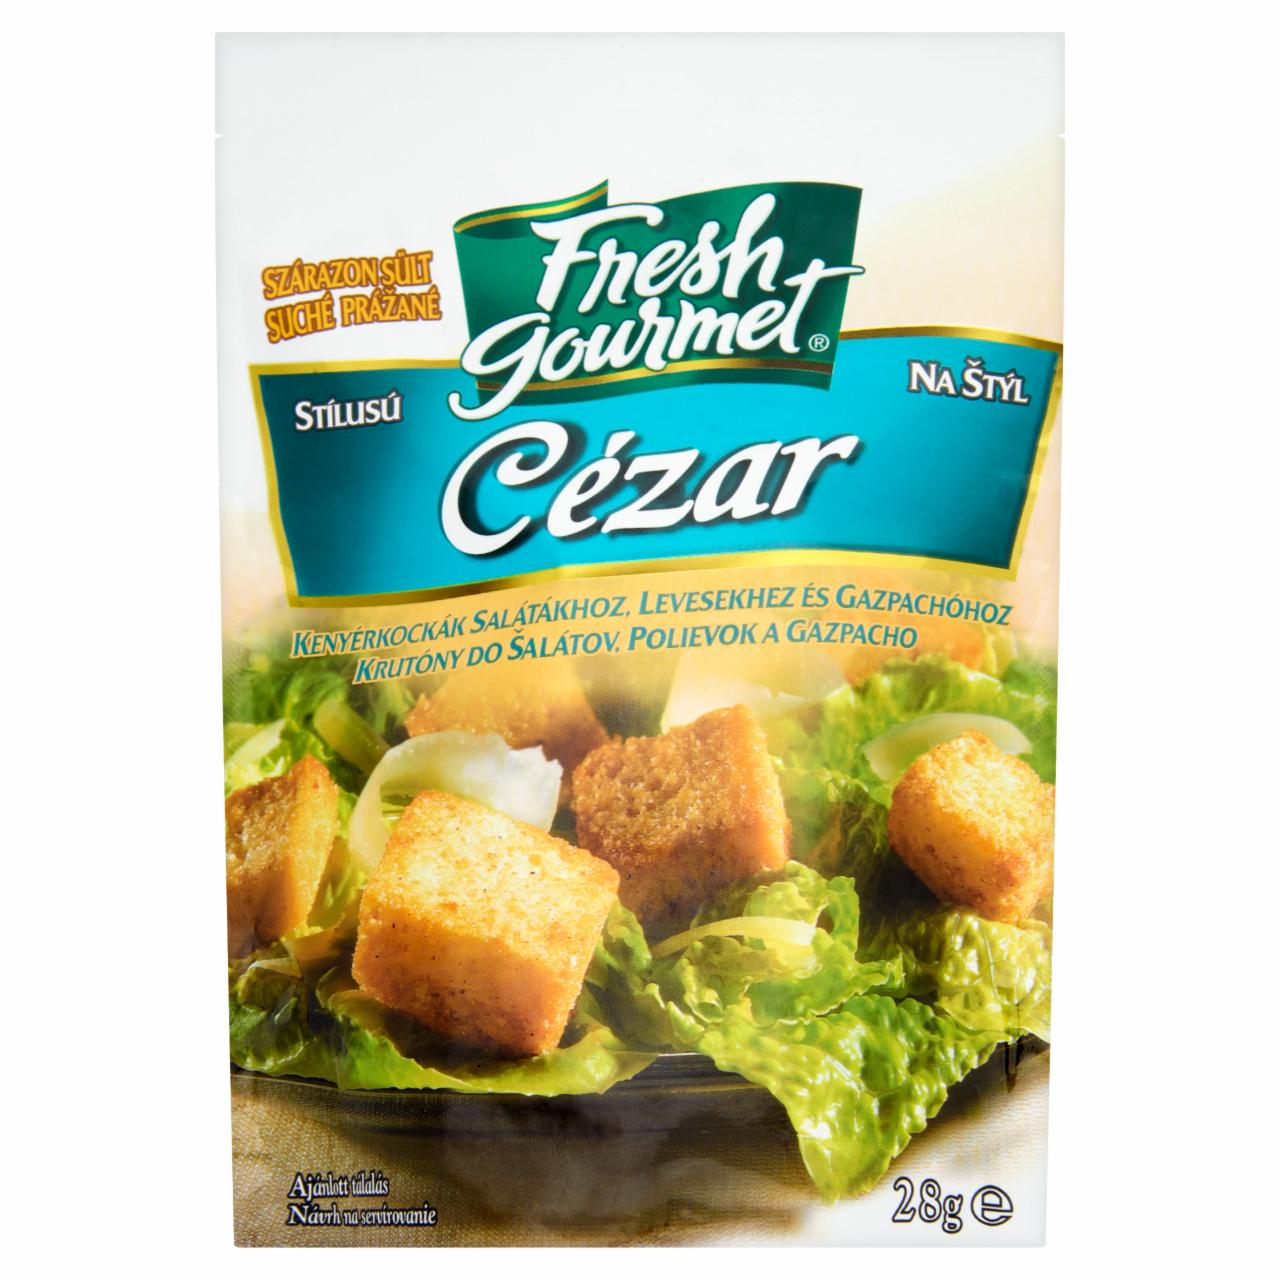 Képek - Fresh Gourmet szárazon sült cézár stílusú kenyérkockák salátákhoz, levesekhez és gazpachóhoz 28 g